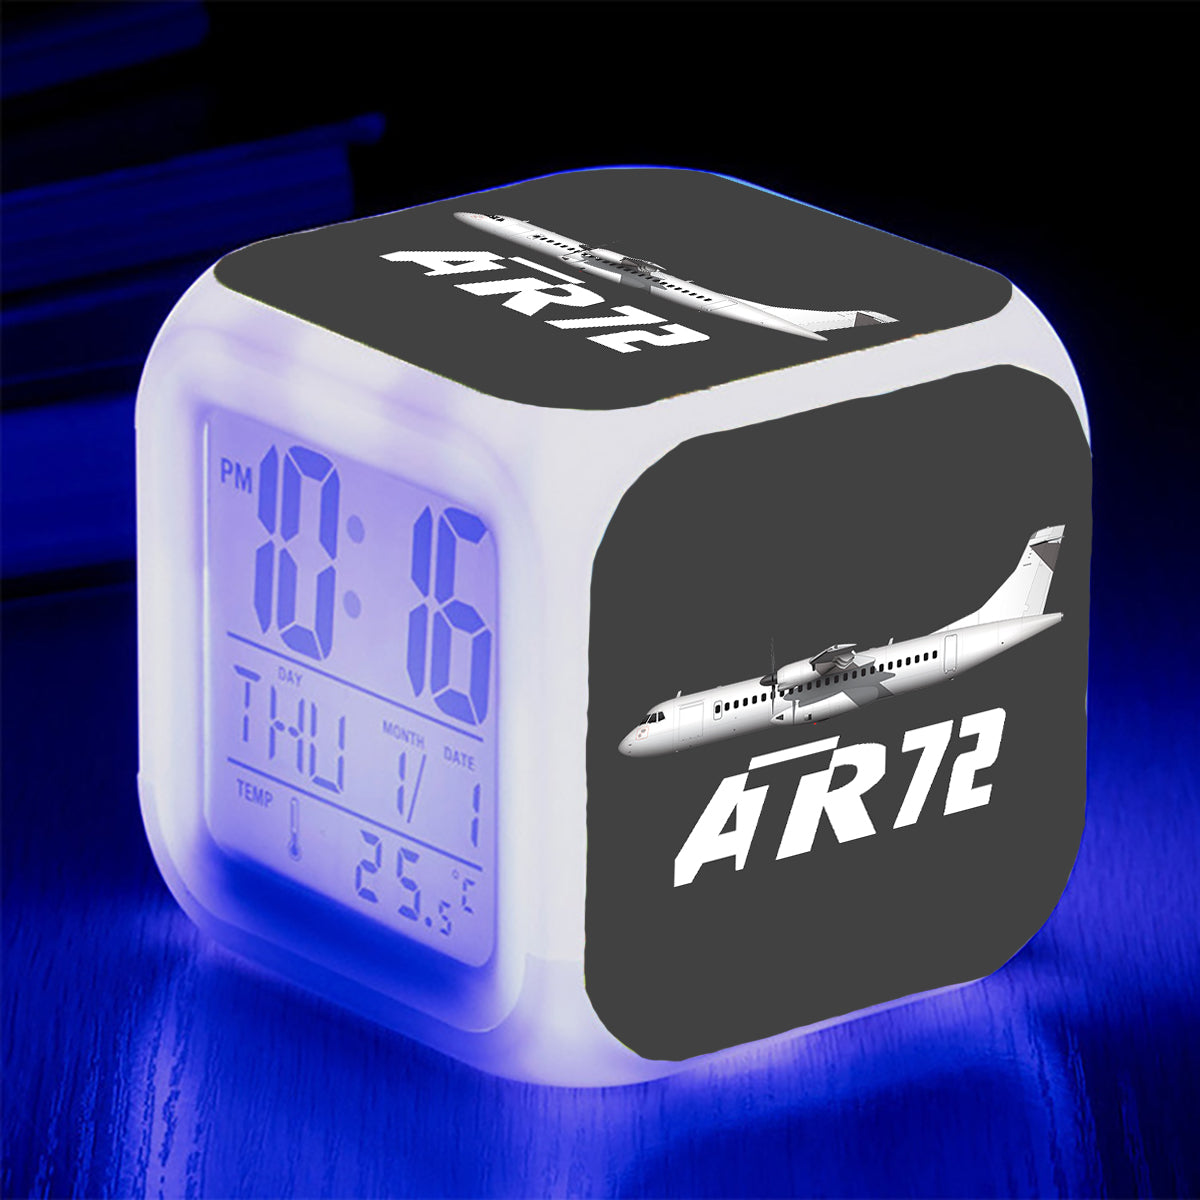 The ATR72 Designed "7 Colour" Digital Alarm Clock